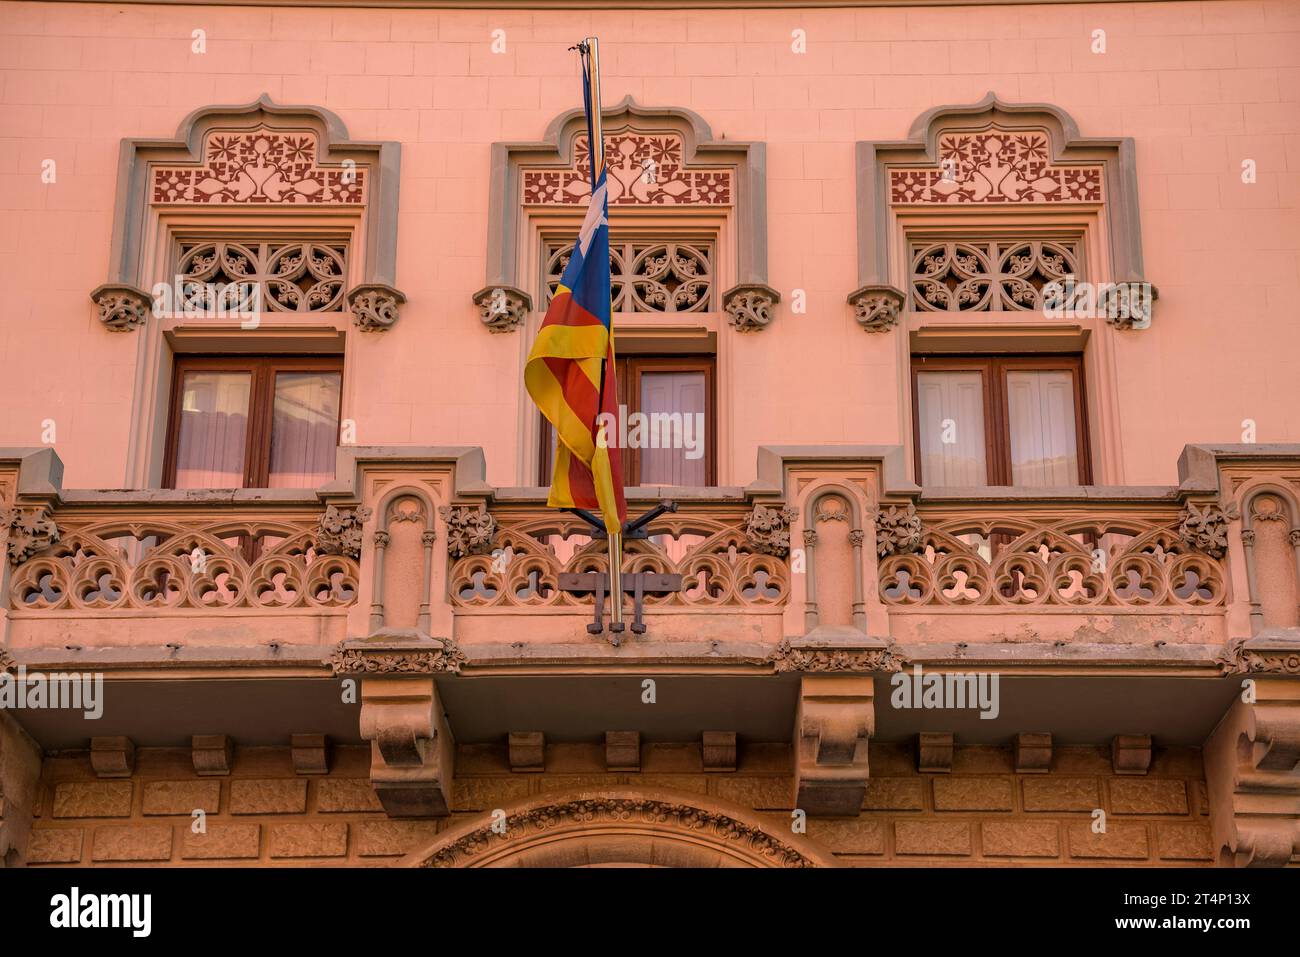 Facade of the Comella house, modernist style, in Vic (Osona, Barcelona, Catalonia, Spain) ESP: Fachada de la casa Comella, de estilo modernista, Vic Stock Photo